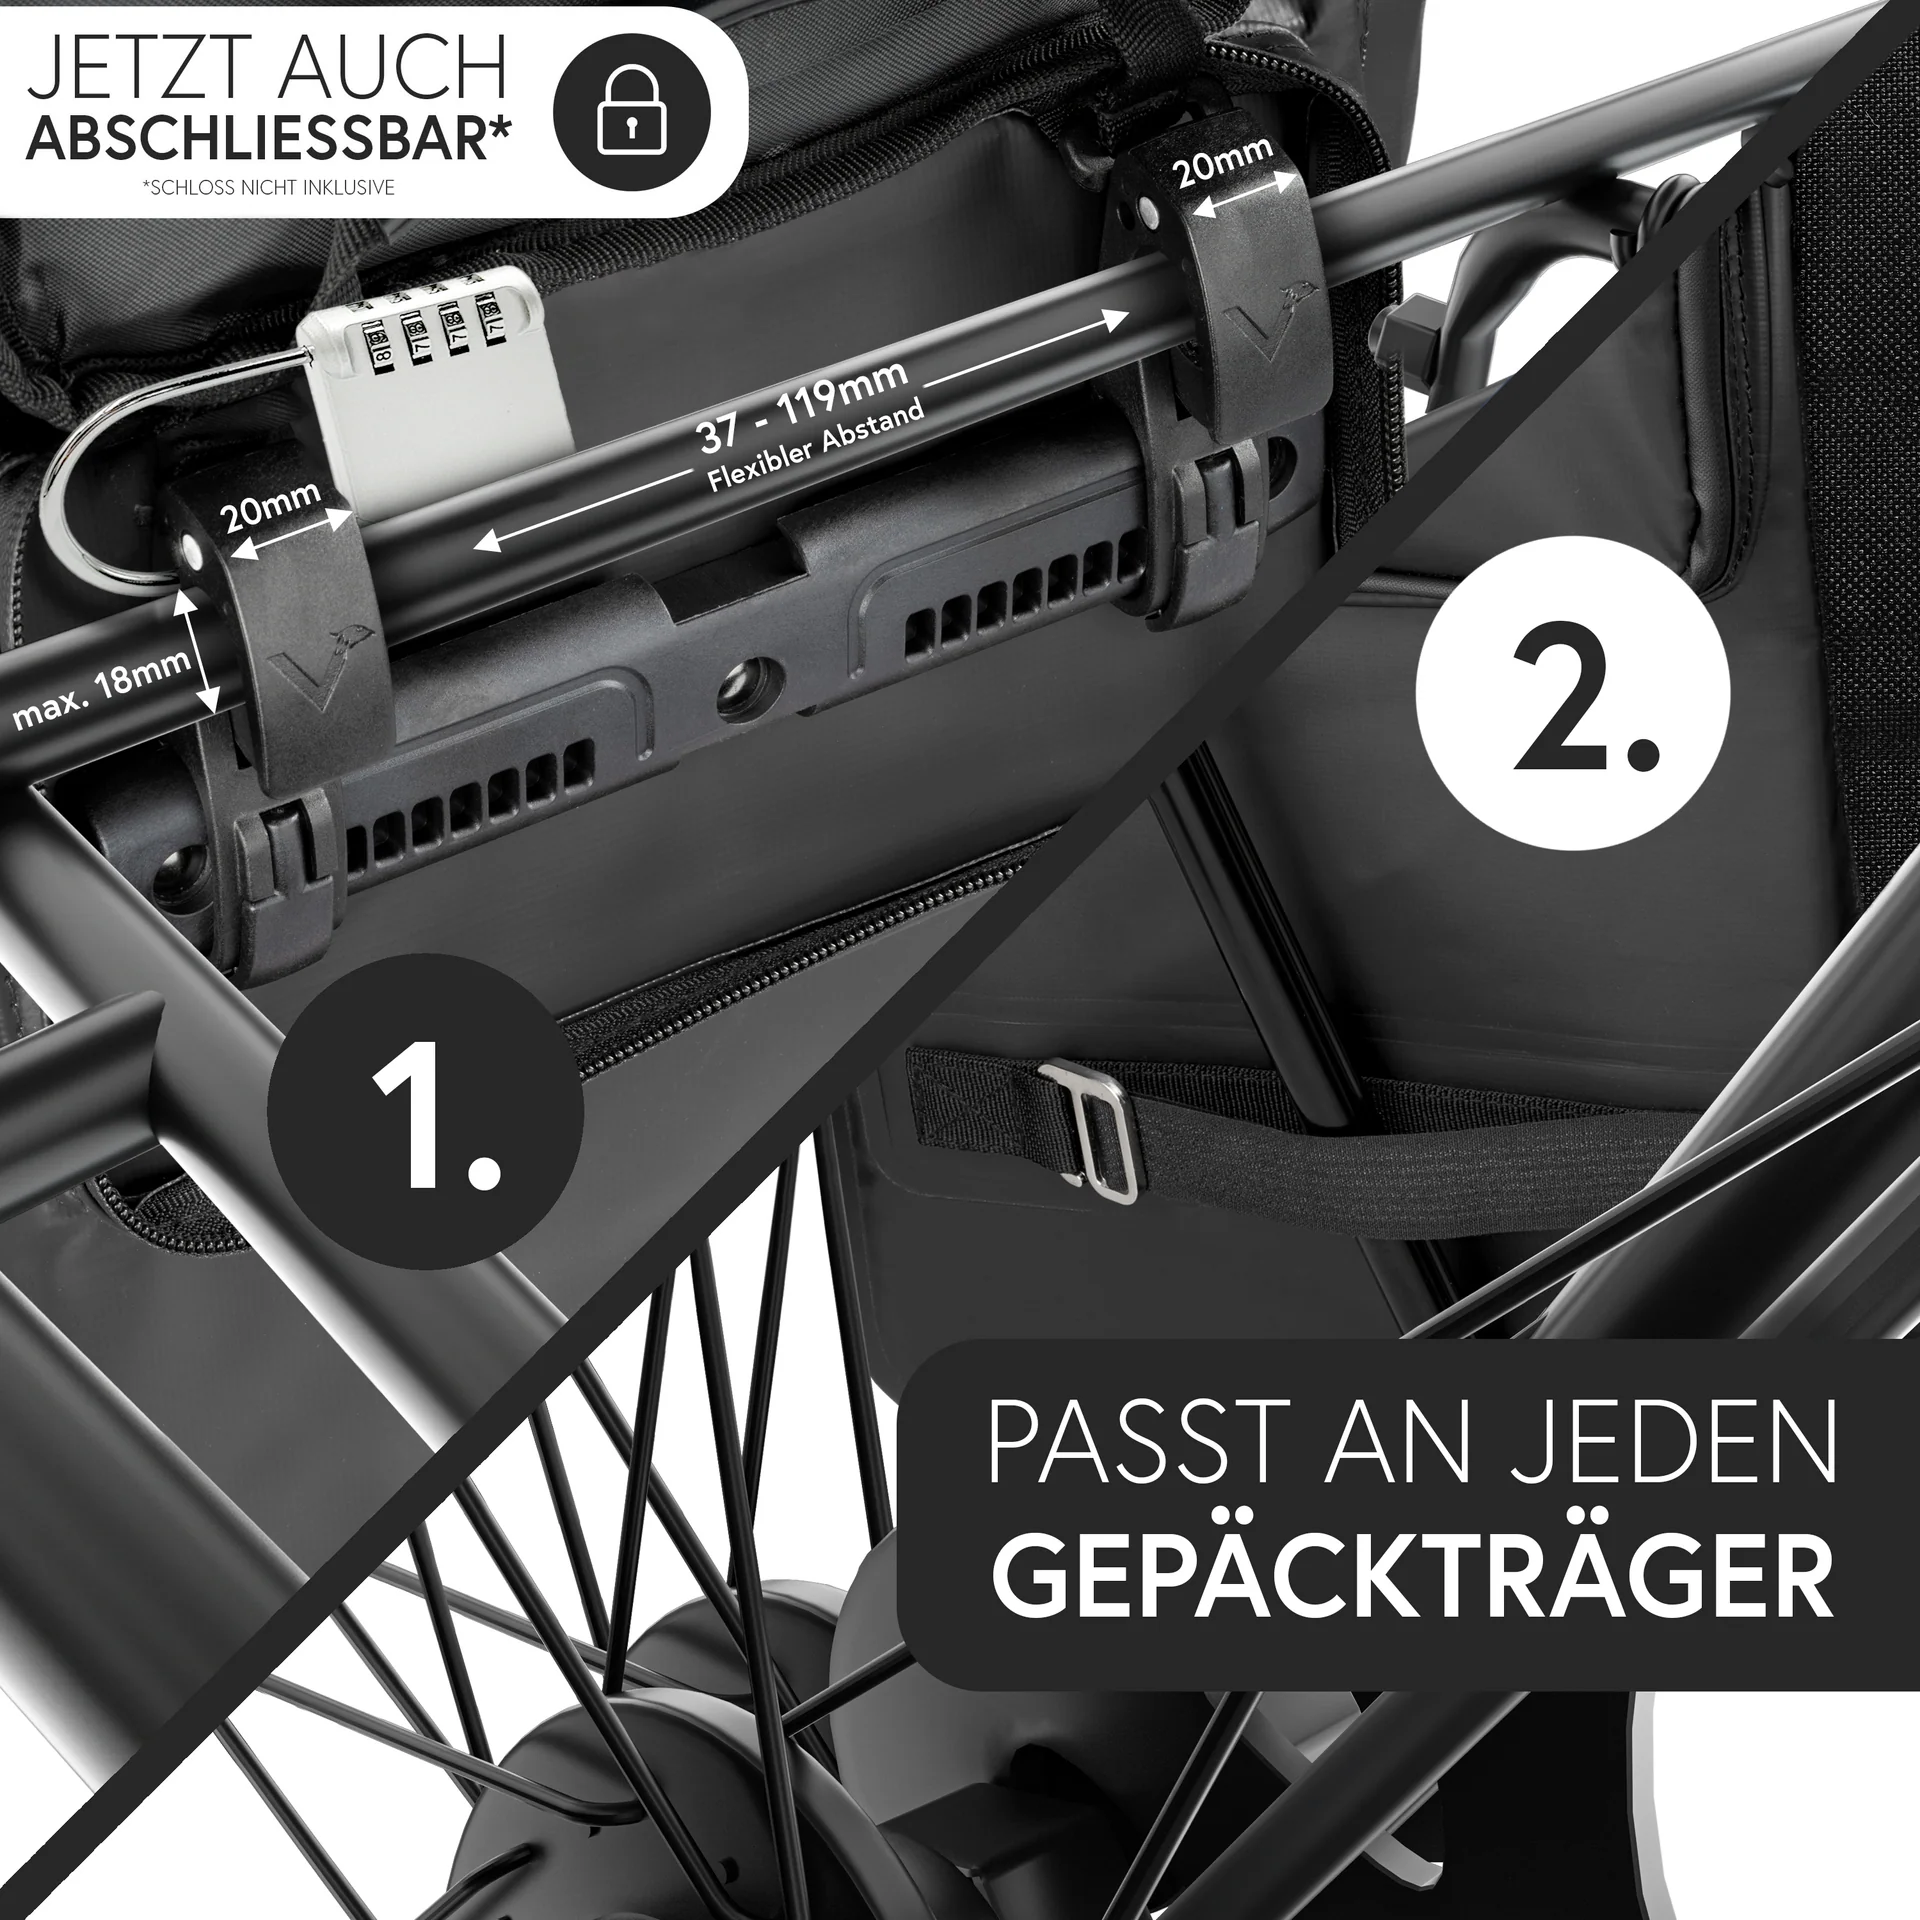 Valkental Packtasche ValkOne 3in1  Einzeltasche mit Rucksackfunktion Black Textura 18L- 25L Art. dv-vsl6-500s